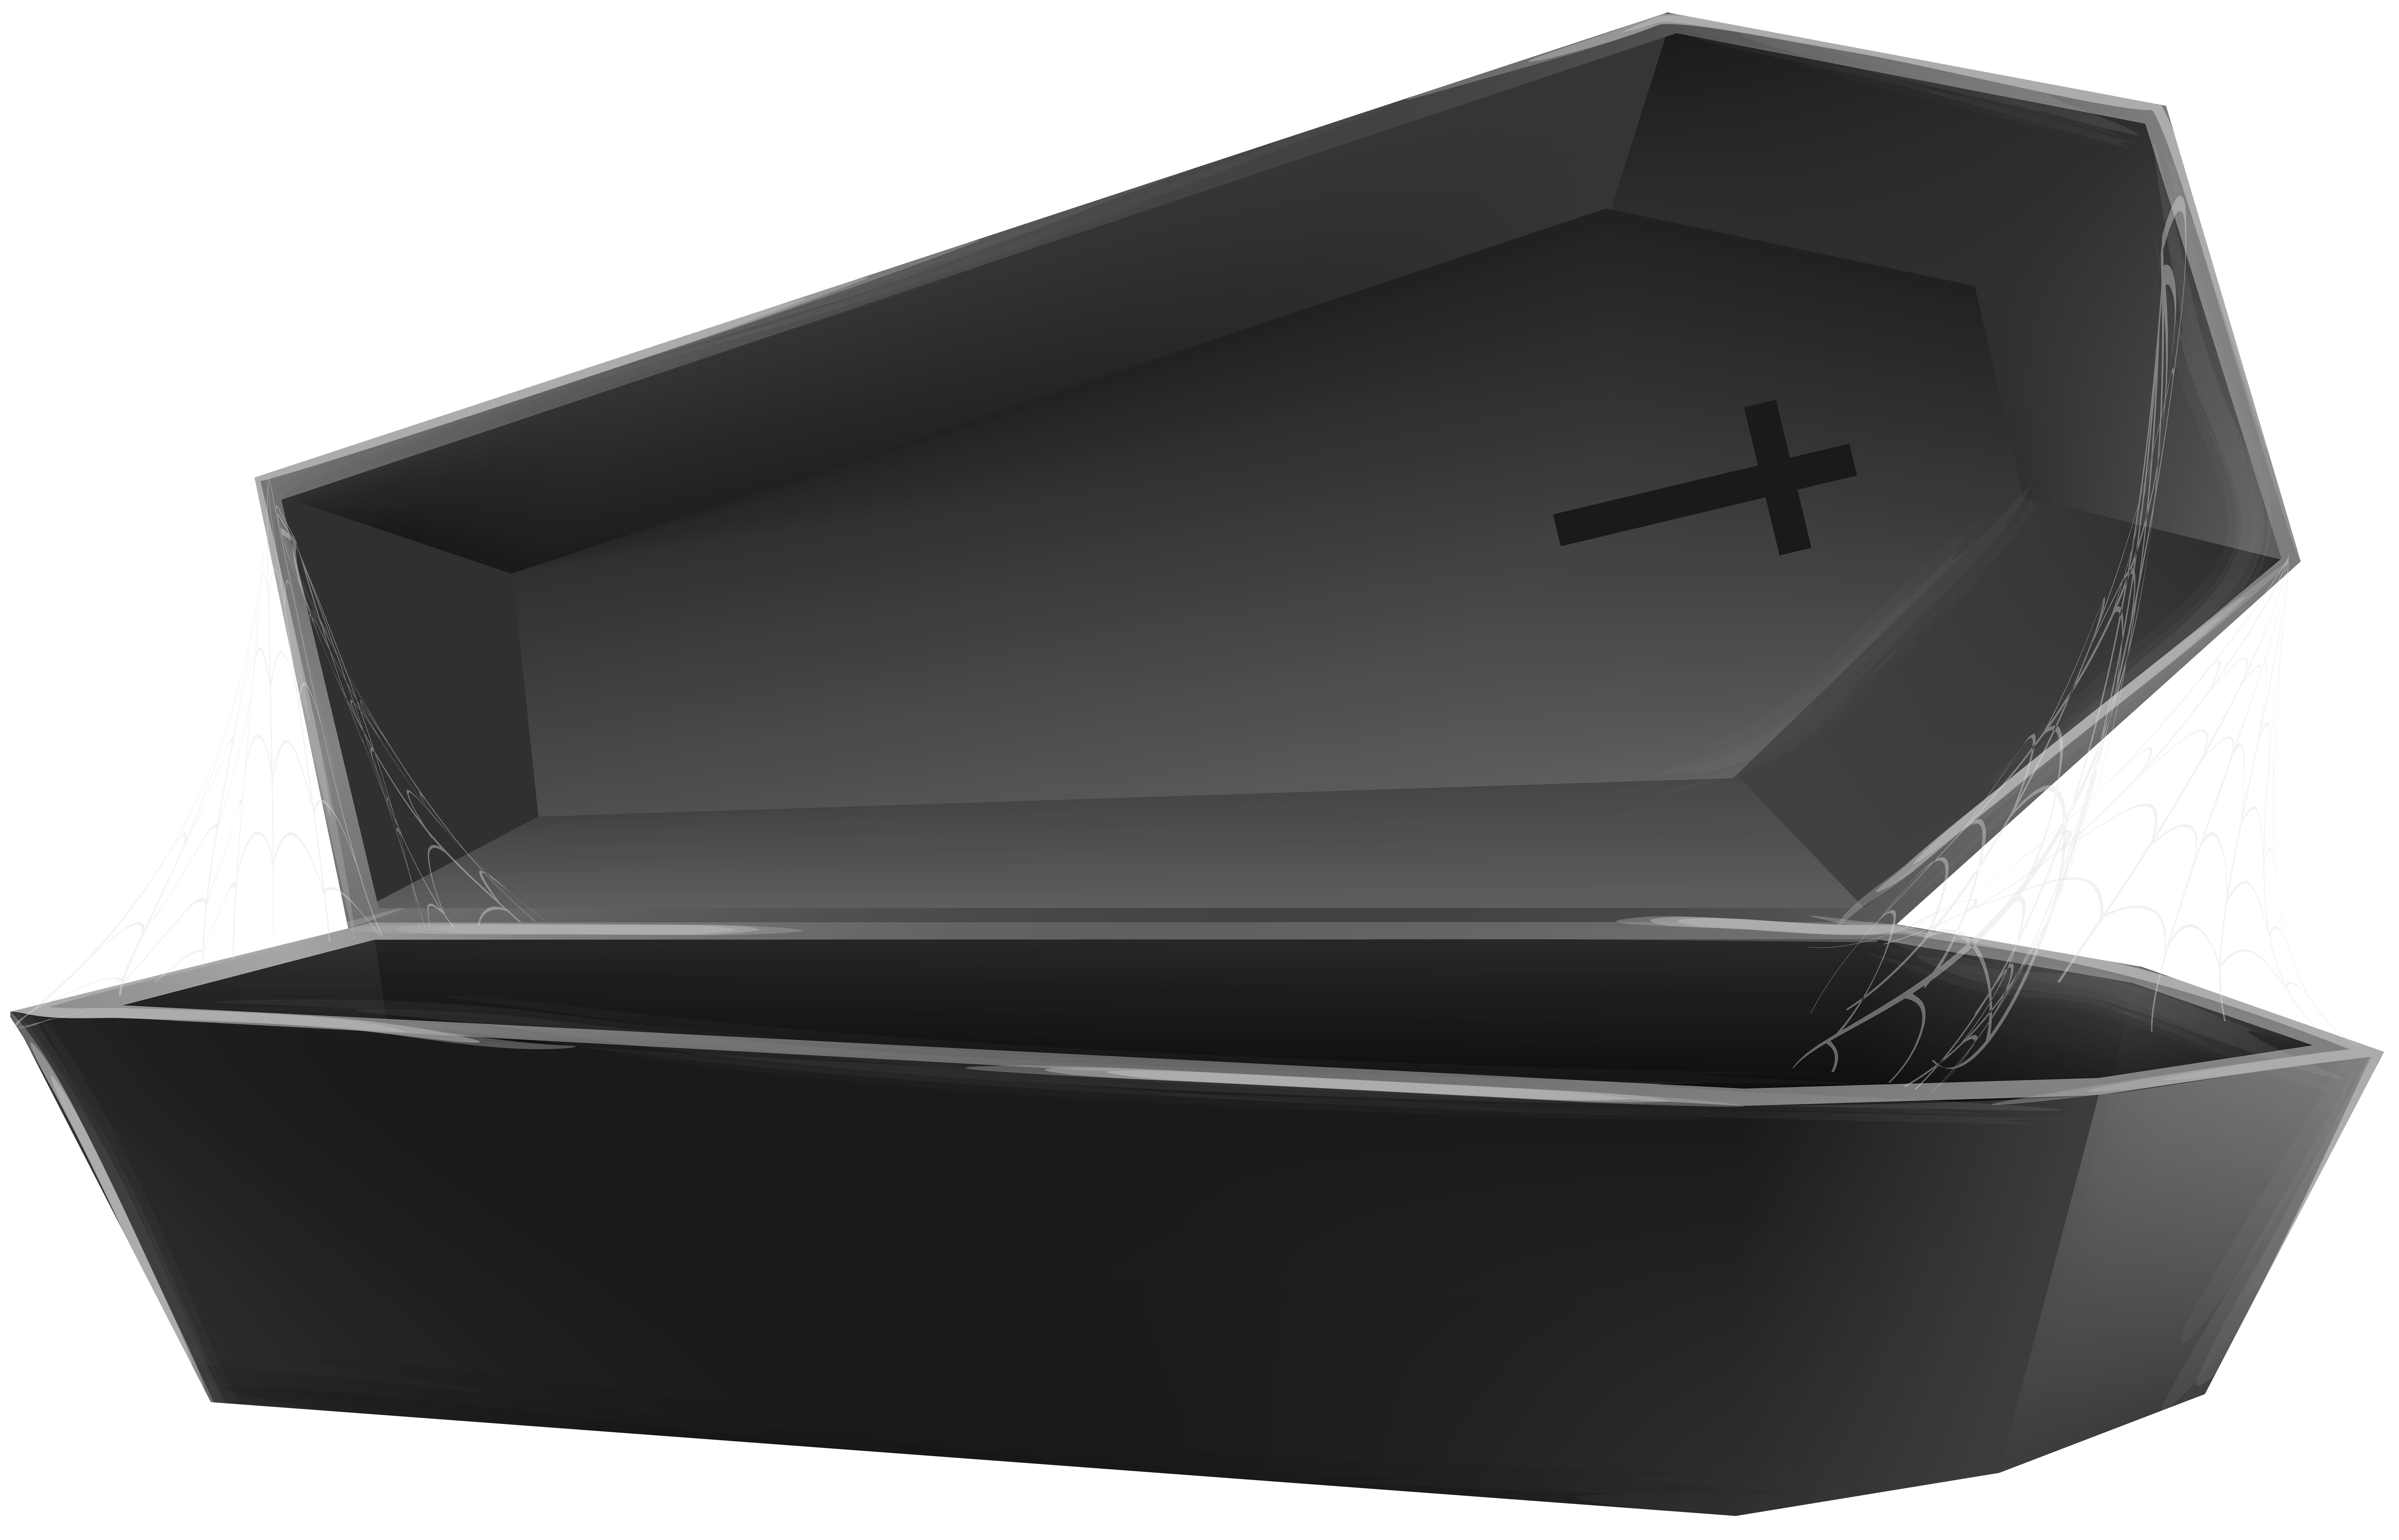 Coffin download. Коффин гроб. Гроб с открытой крышкой. Открытый гроб сбоку. Гроб на прозрачном фоне.